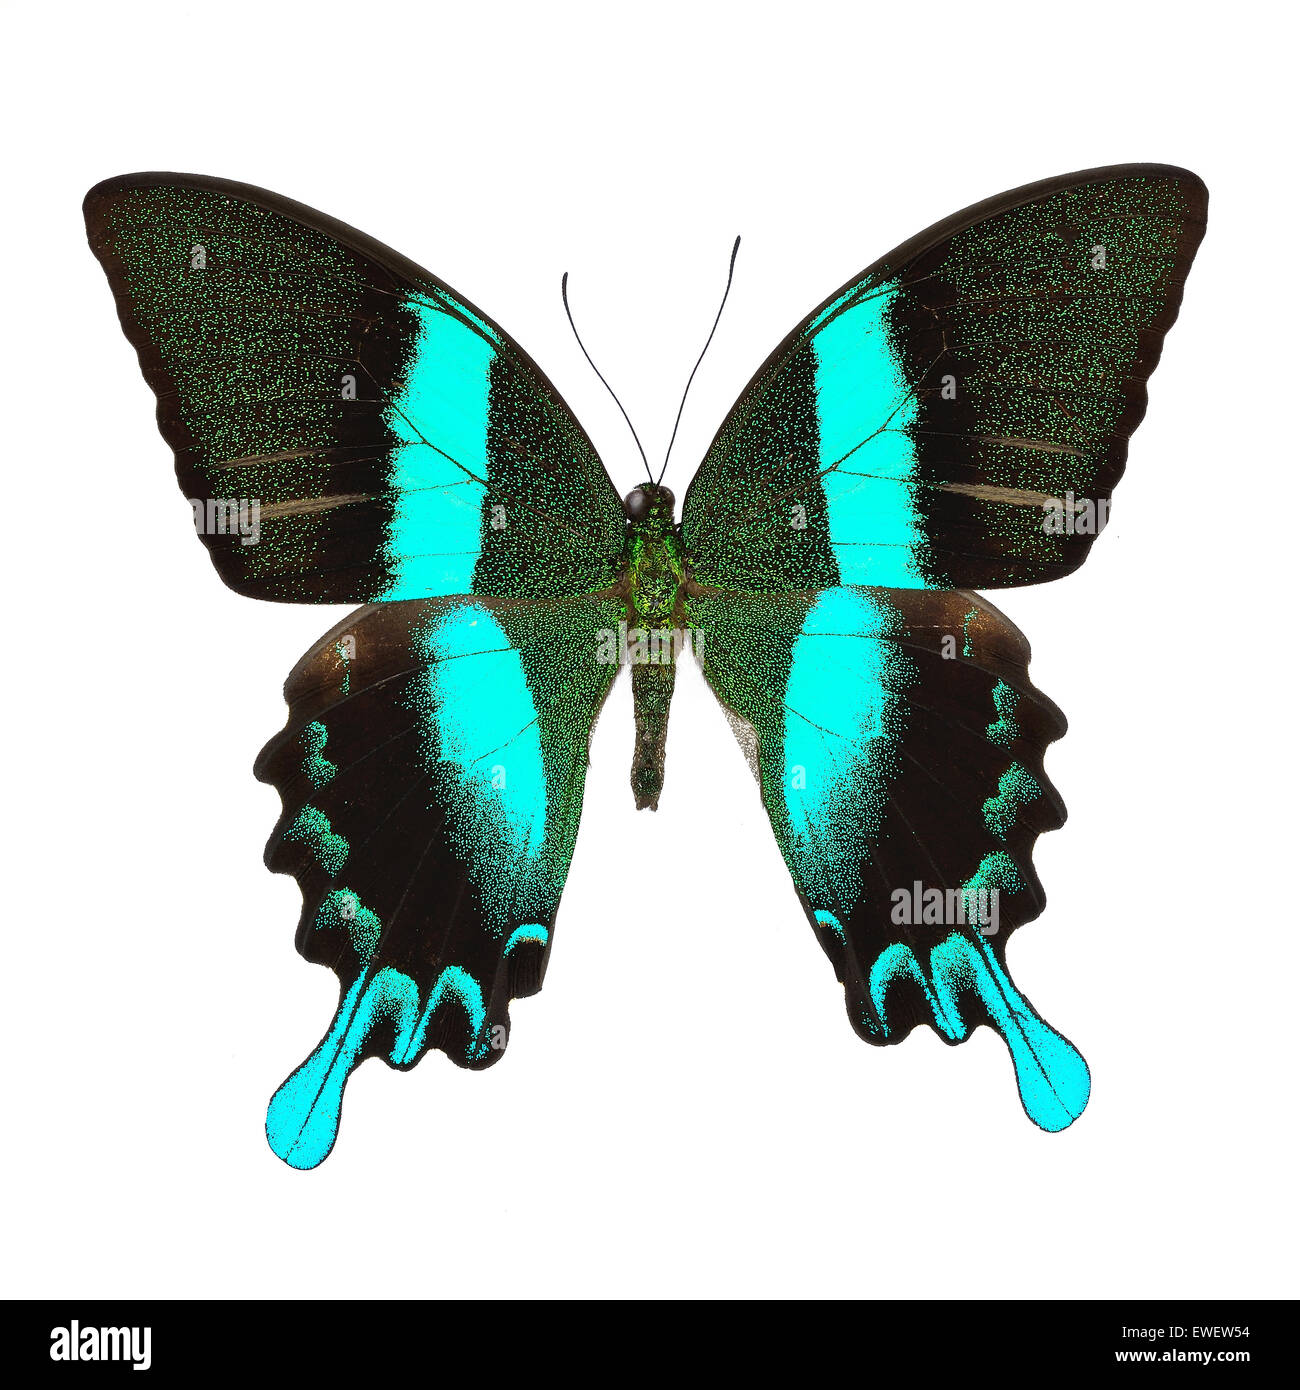 Beau papillon bleu et vert, vert majestueux Papilio blumei), isolé sur fond blanc Banque D'Images